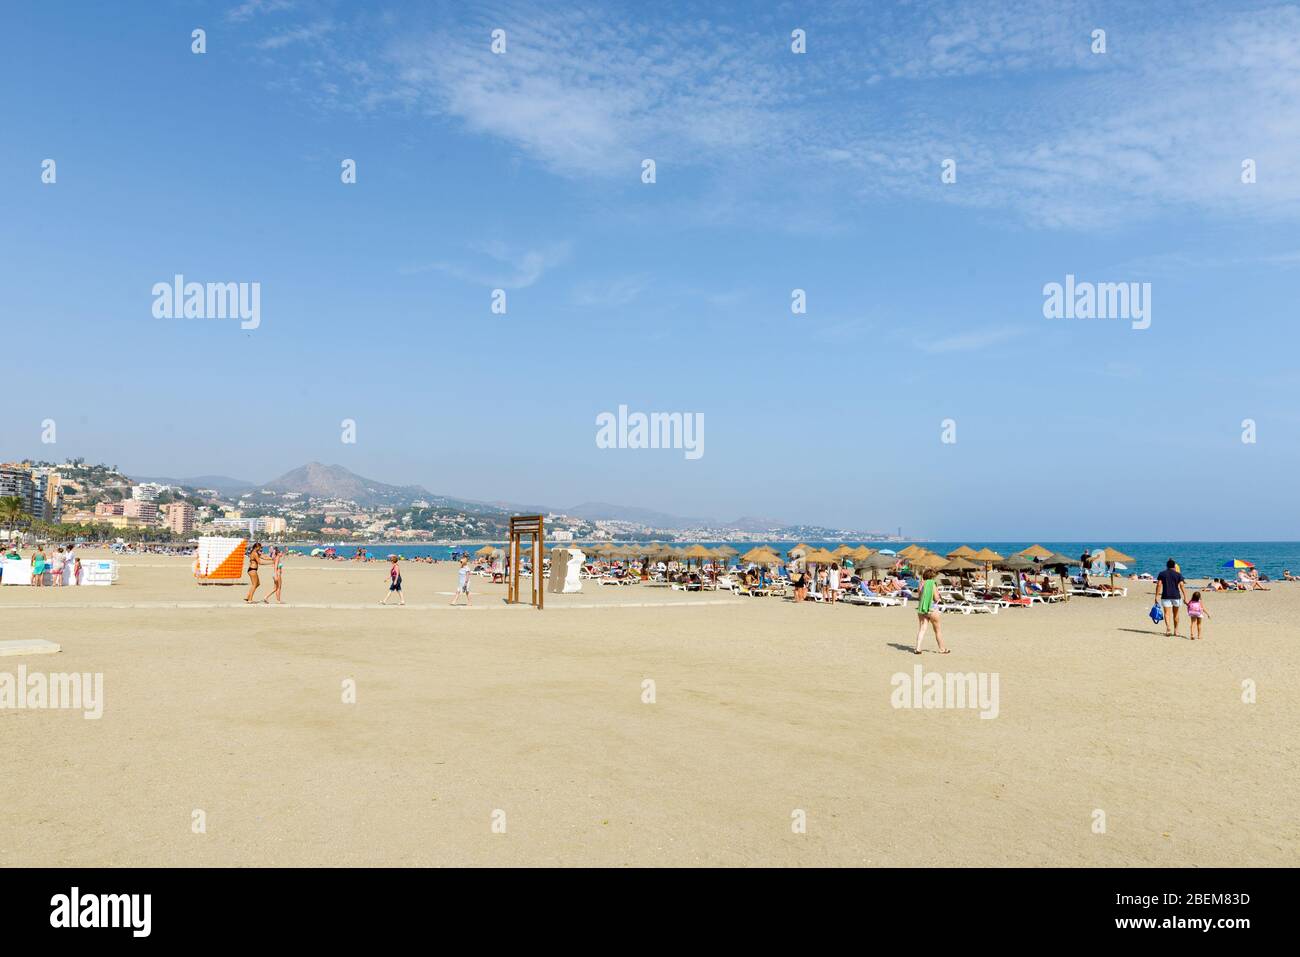 MALAGA, SPANIEN - 3. SEPTEMBER: Menschen, die einen heißen Sommertag am Strand von Malaga genießen Stockfoto